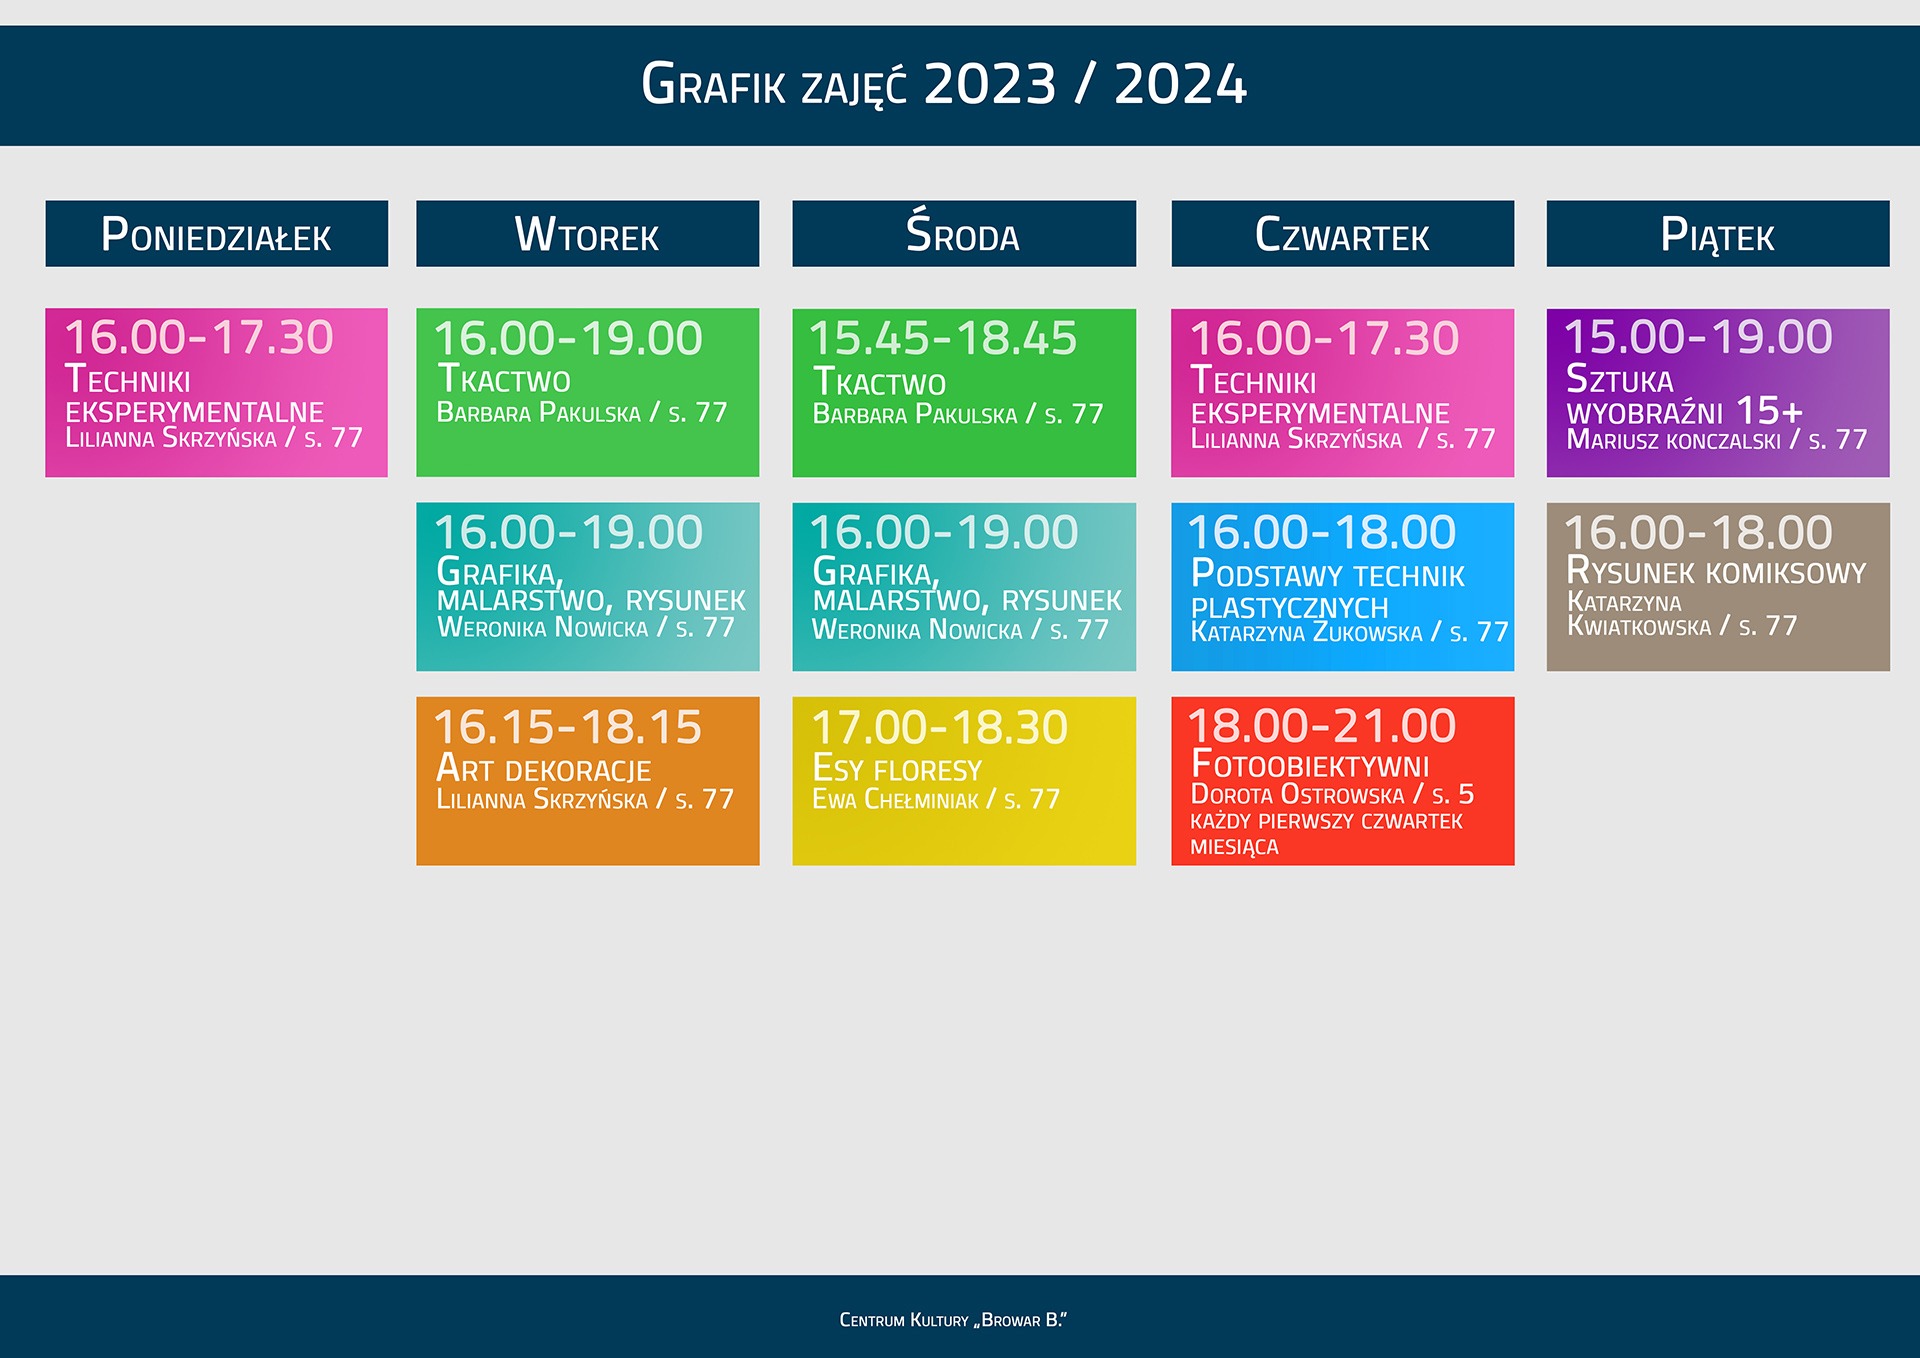 GRAFIK ZAJEC PEP 2022-2023 - START